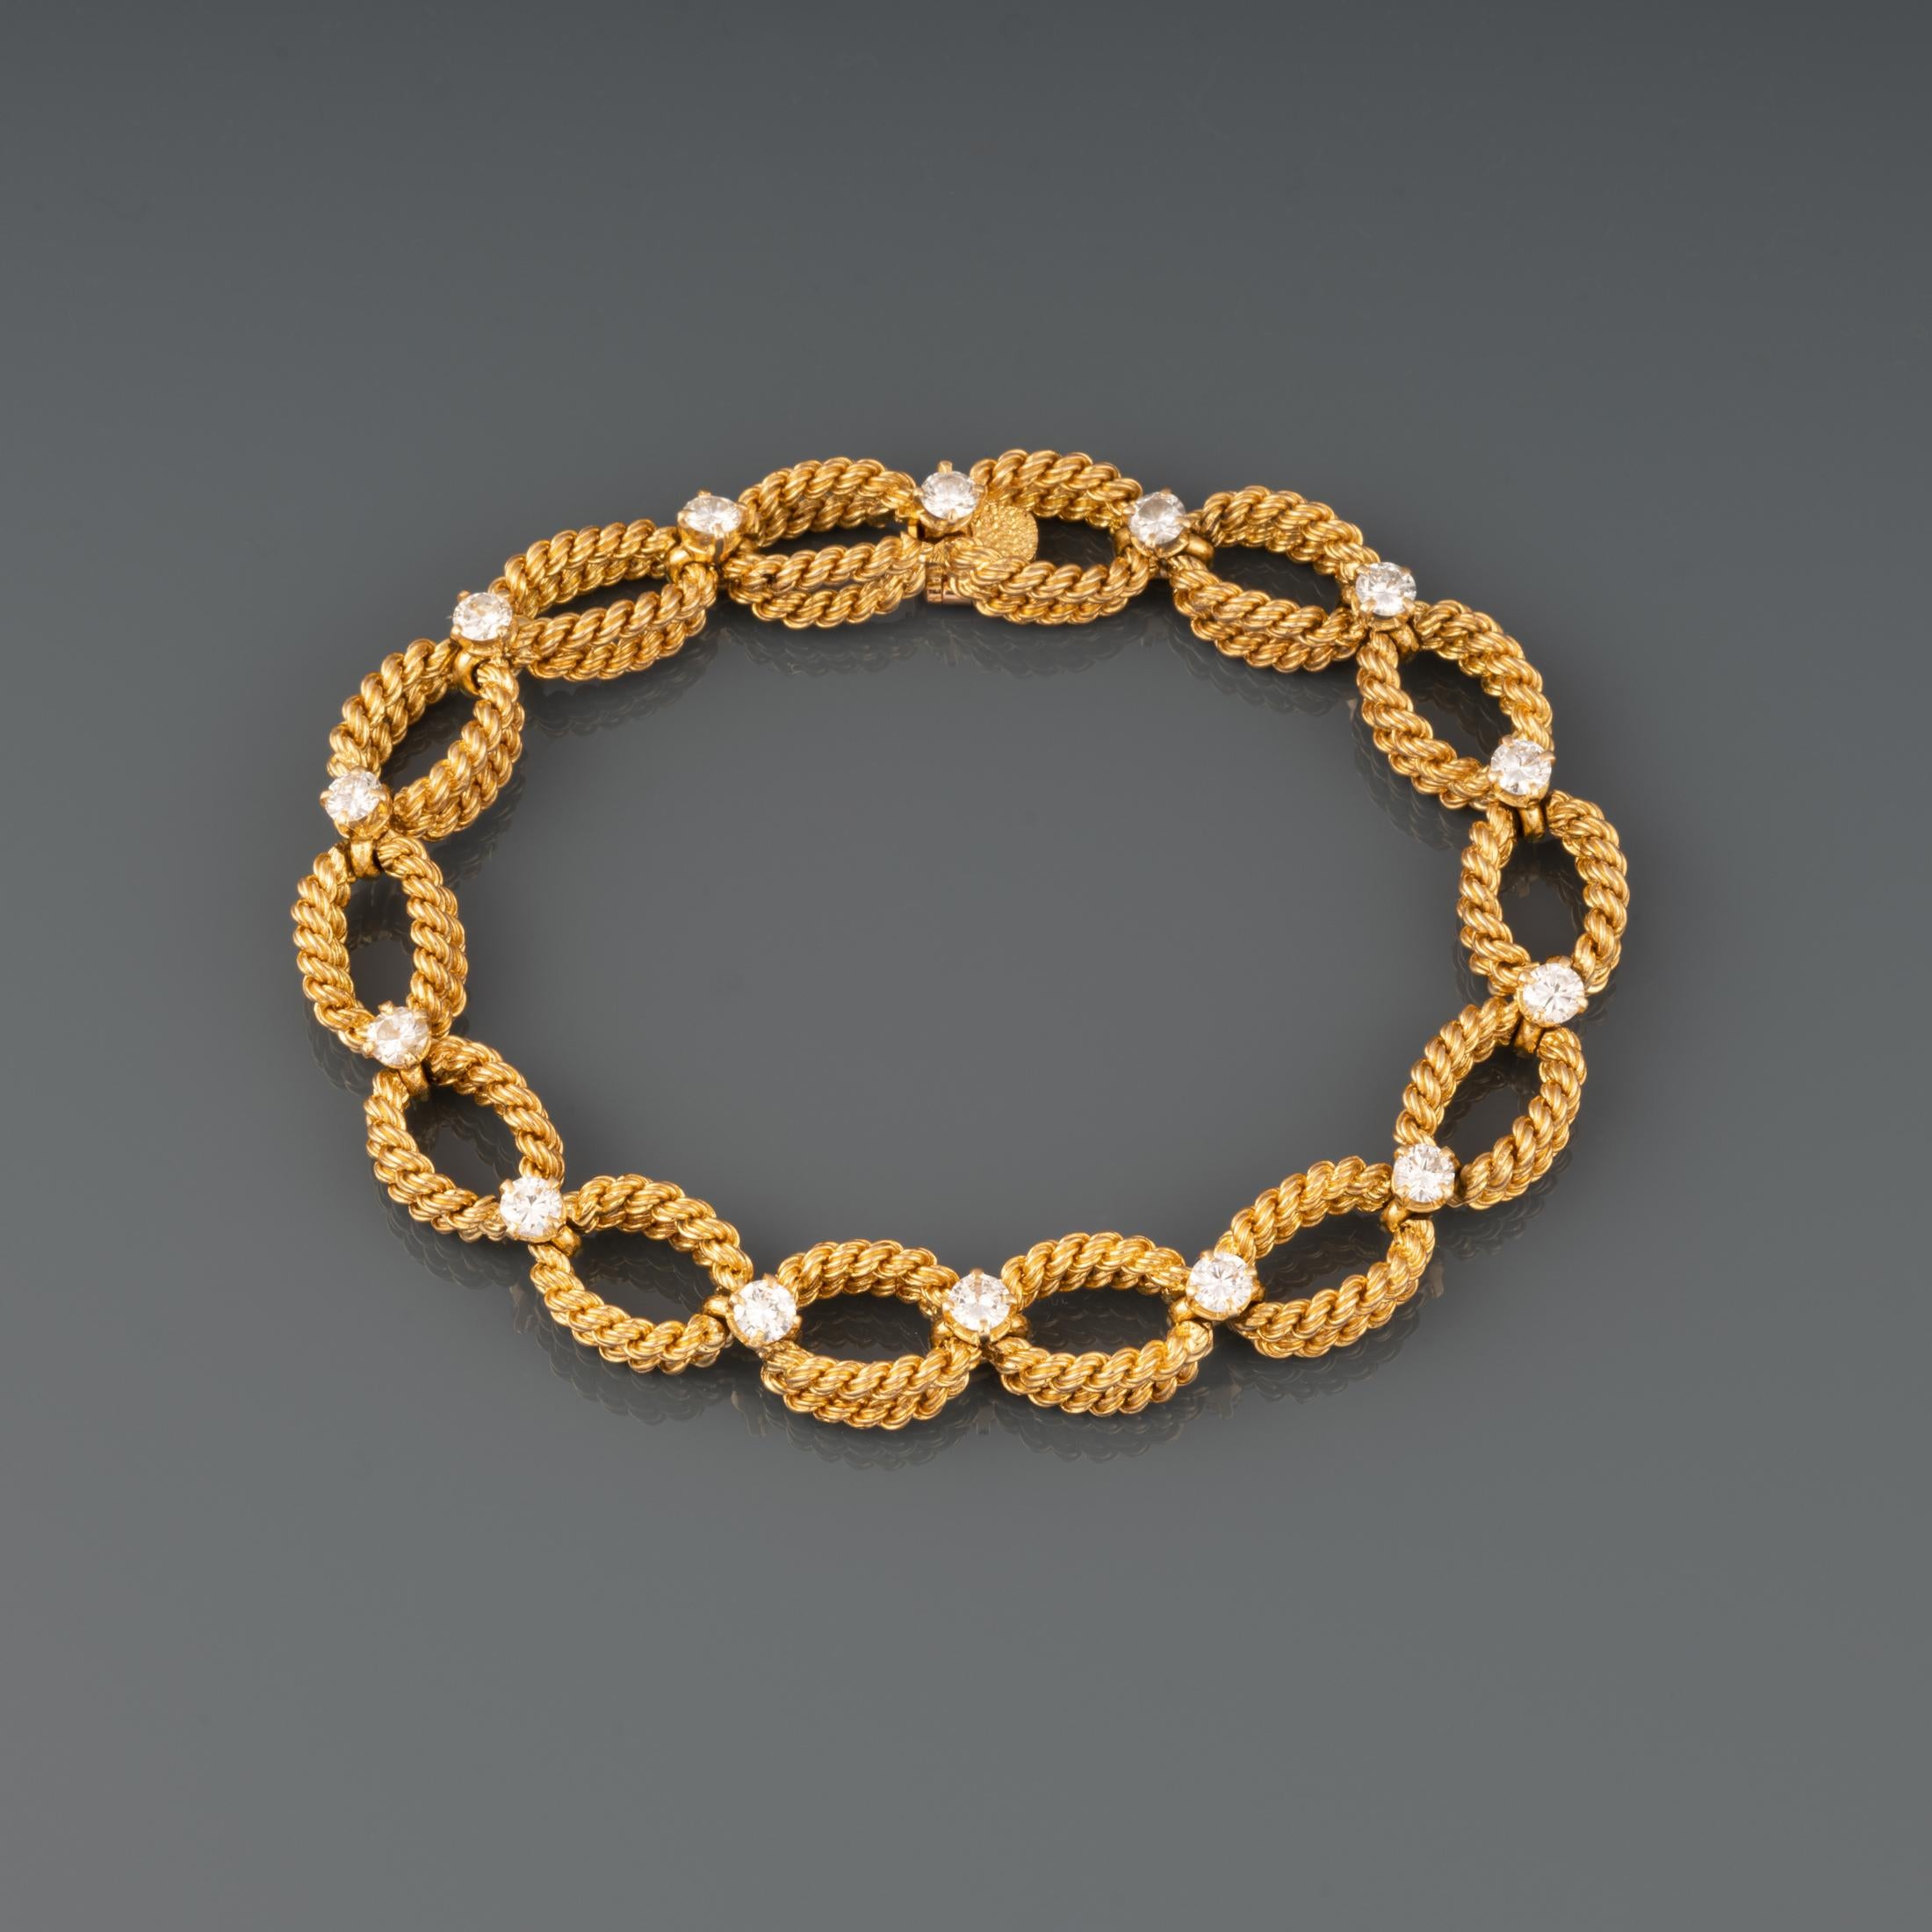 Un très joli bracelet vintage, réalisé par Boucheron vers 1970.

Réalisé en or jaune 18 carats et serti d'environ 1,40 carats de diamants de taille brillant.

La largeur est de 10 mm.

La taille est de 18,5 cm.

Poids : 38,50 grammes